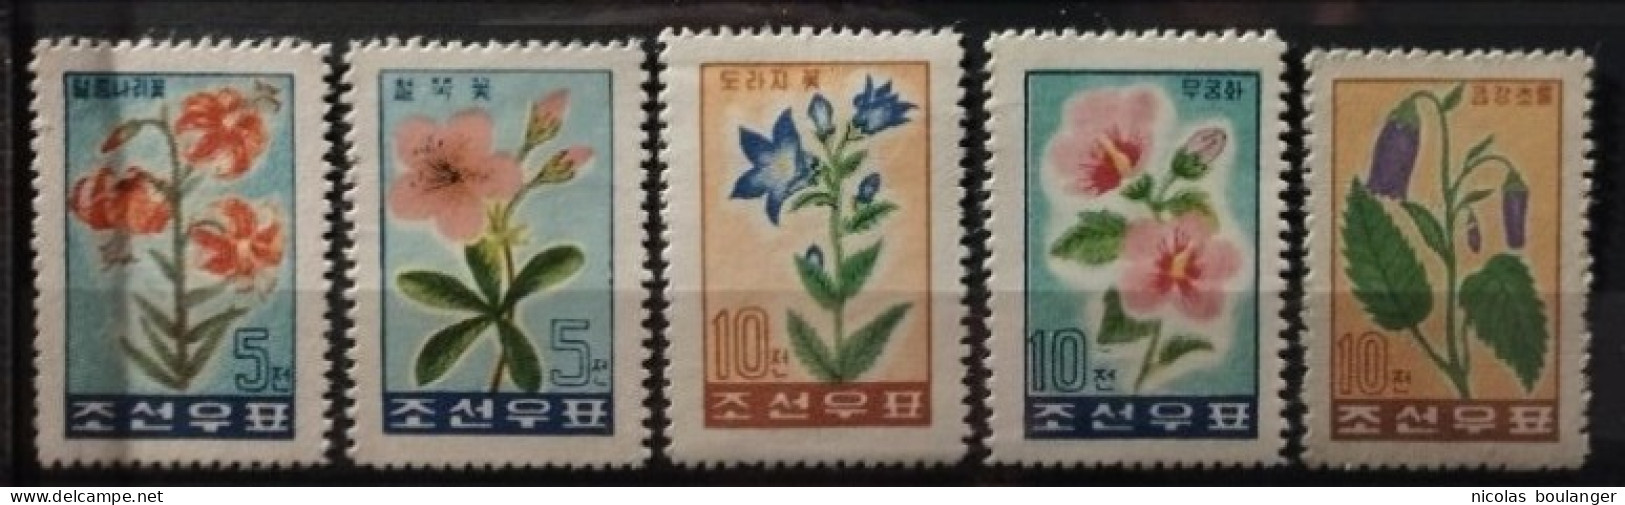 Corée Du Nord 1960-61 / Yvert N°223-227 / ** (sans Gomme) (le 225 Avec Gomme*) - Korea, North